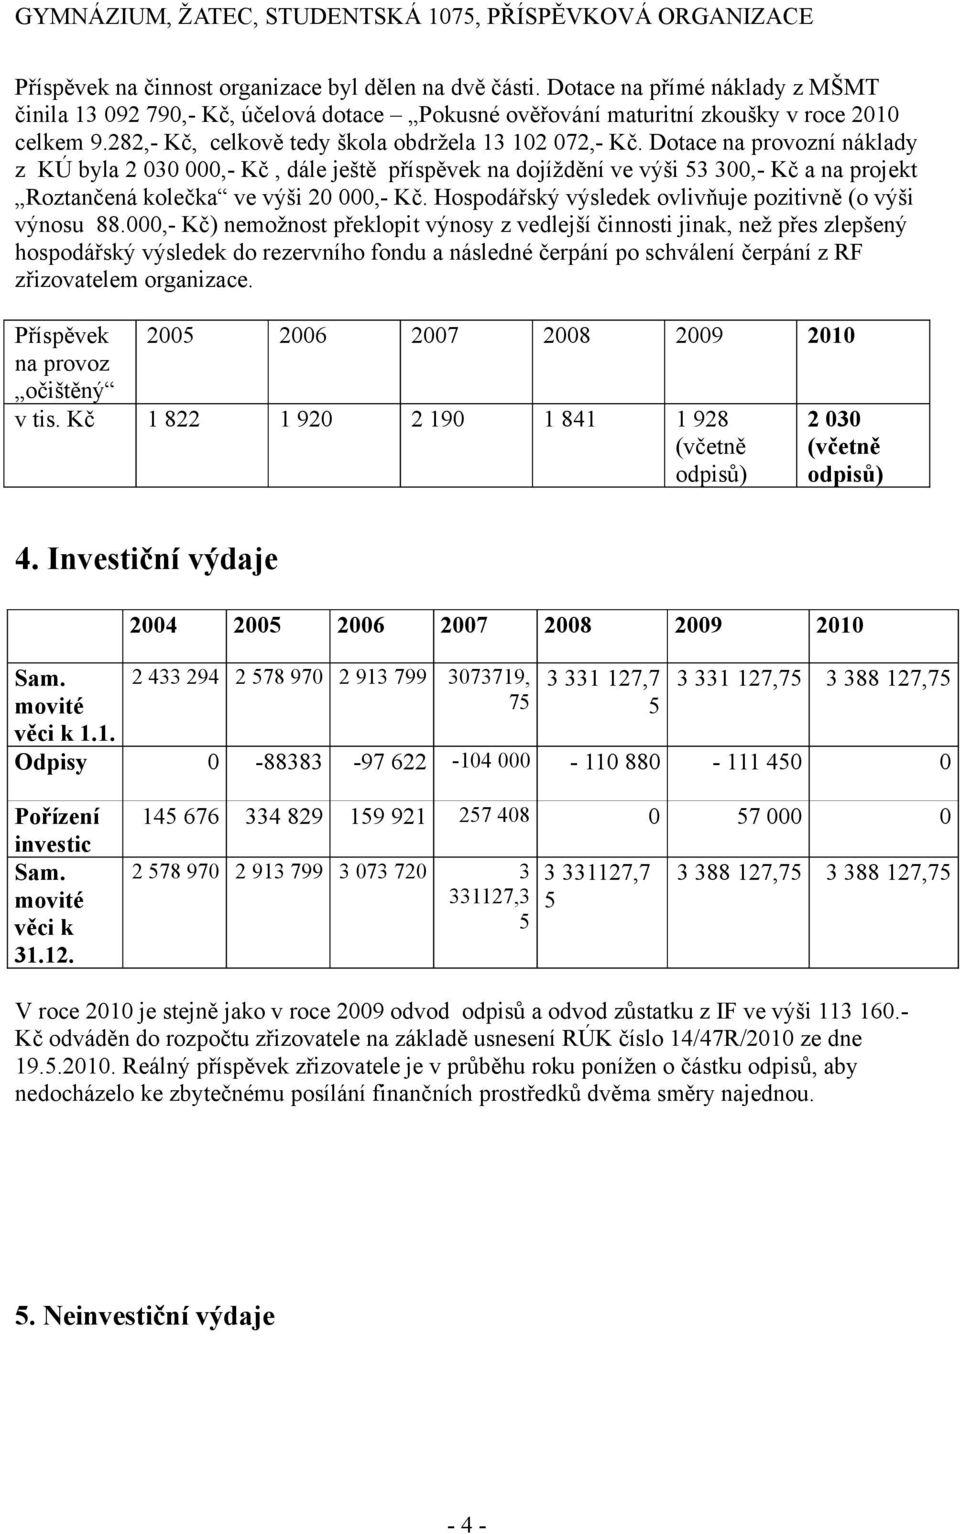 Dotace na provozní náklady z KÚ byla 2 030 000,- Kč, dále ještě příspěvek na dojíždění ve výši 53 300,- Kč a na projekt Roztančená kolečka ve výši 20 000,- Kč.